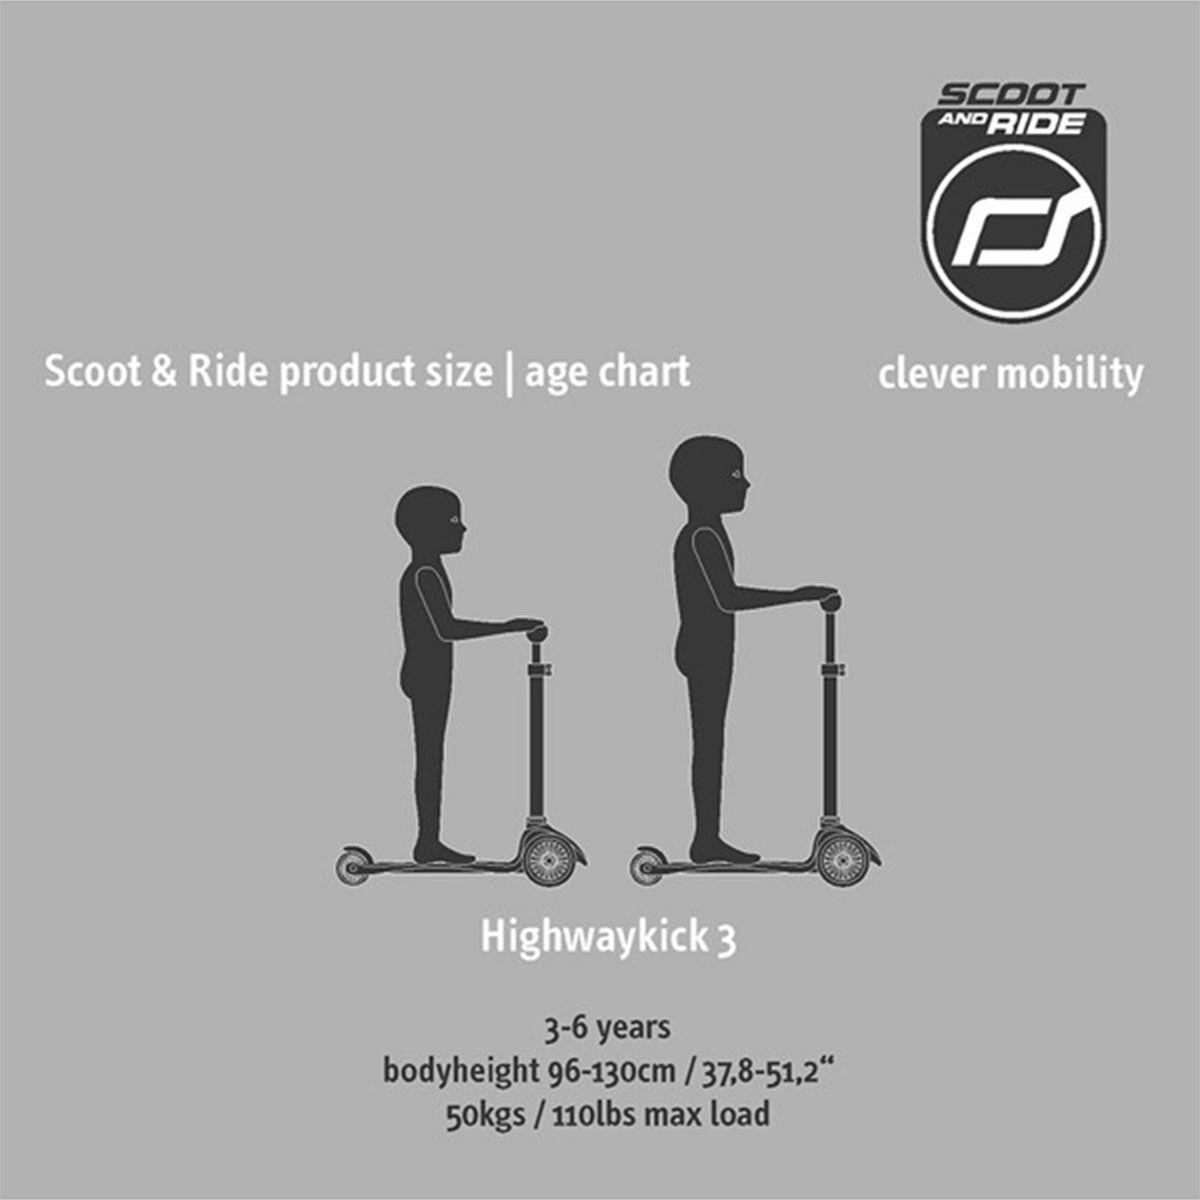 De Scoot and Ride Highwaykick 3 kiwi is een fijne step voor kinderen vanaf 3 jaar. De Highwaykick is goed voor de ontwikkeling van de fijne motoriek, het evenwichtsgevoel en het zelfvertrouwen van kinderen. VanZus.